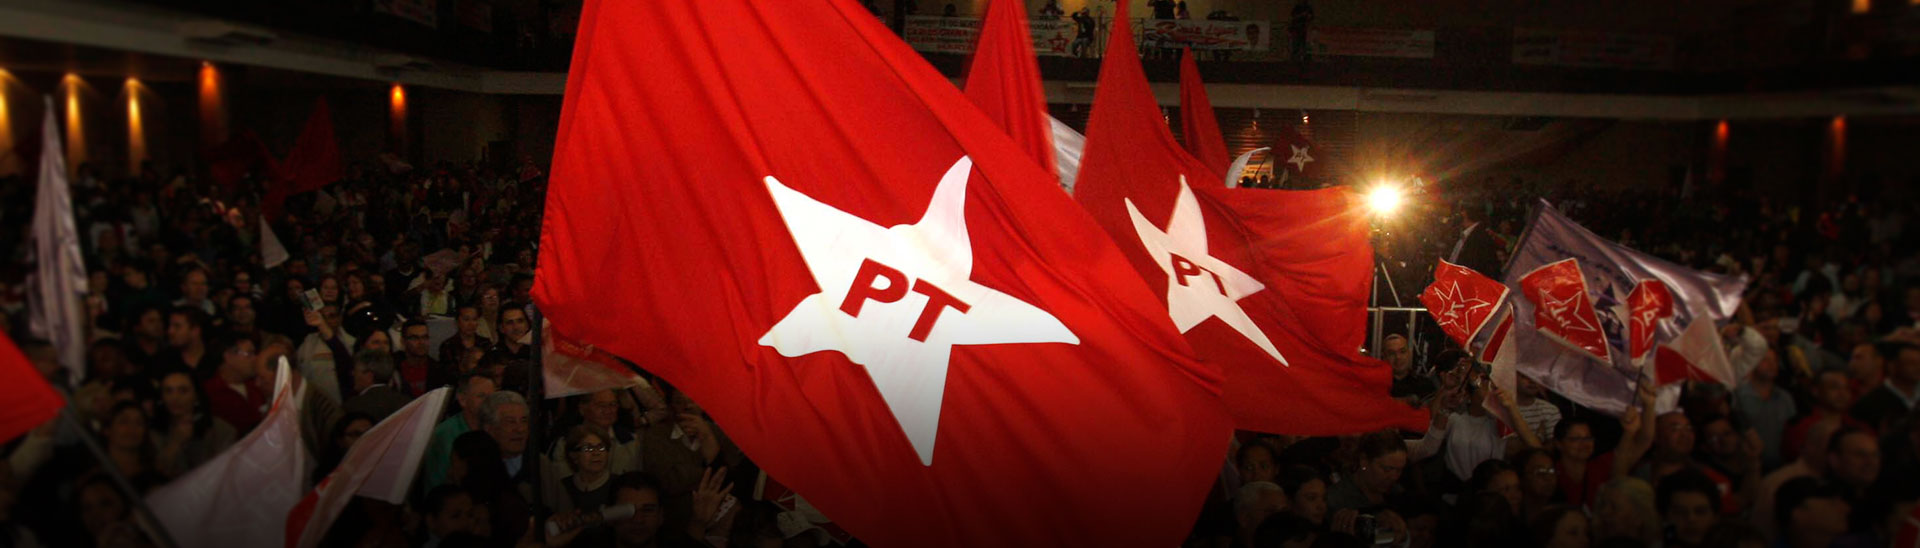 PT decide nesta terça-feira retomada da aliança com Renan Filho